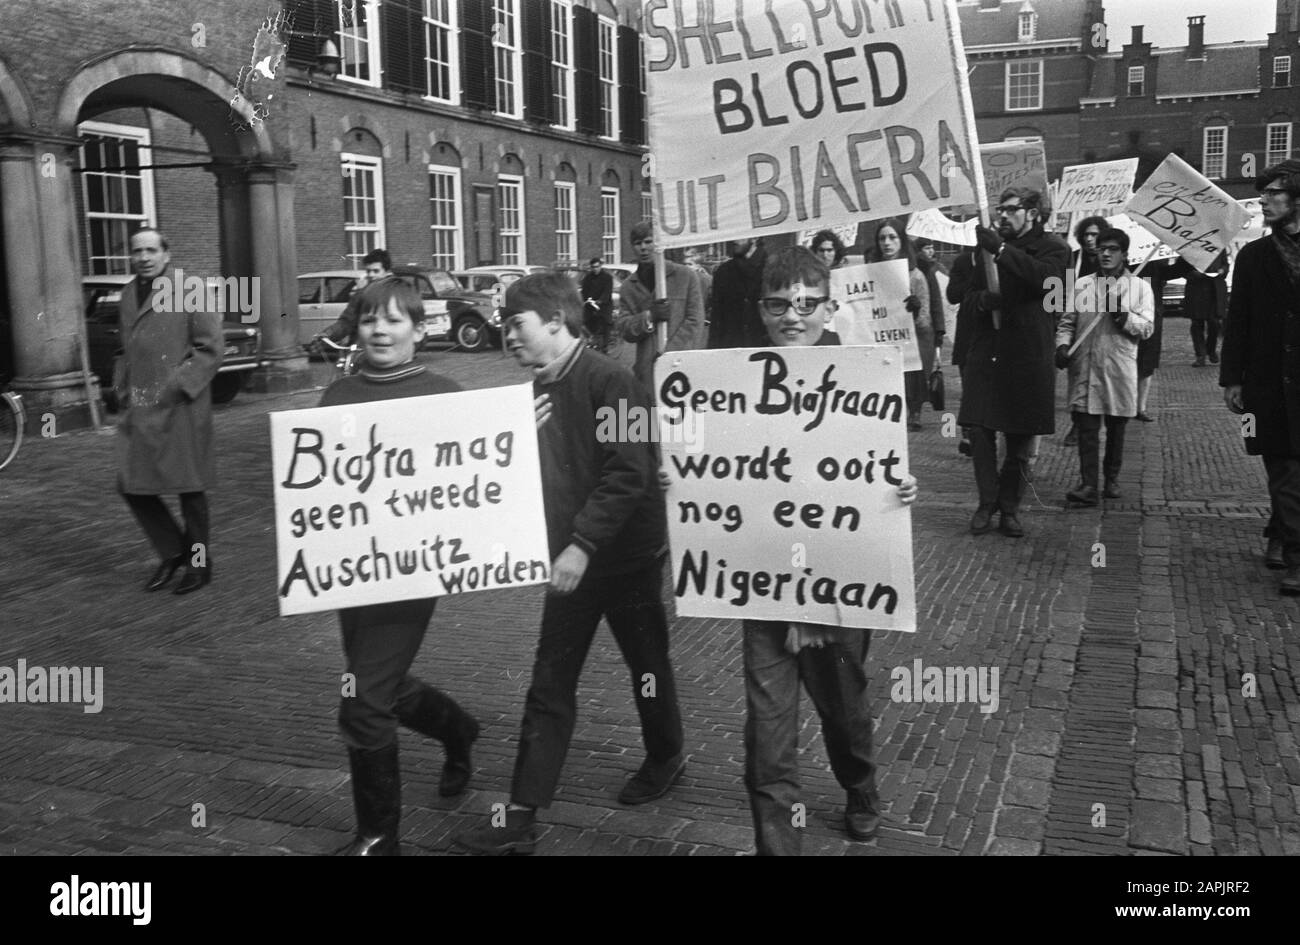 Demonstration for Biafra at Binnenhof Den Haag demonstrant Date: February 25, 1969 Location: Binnenhof, The Hague, Zuid-Holland Keywords: demonstrations Stock Photo